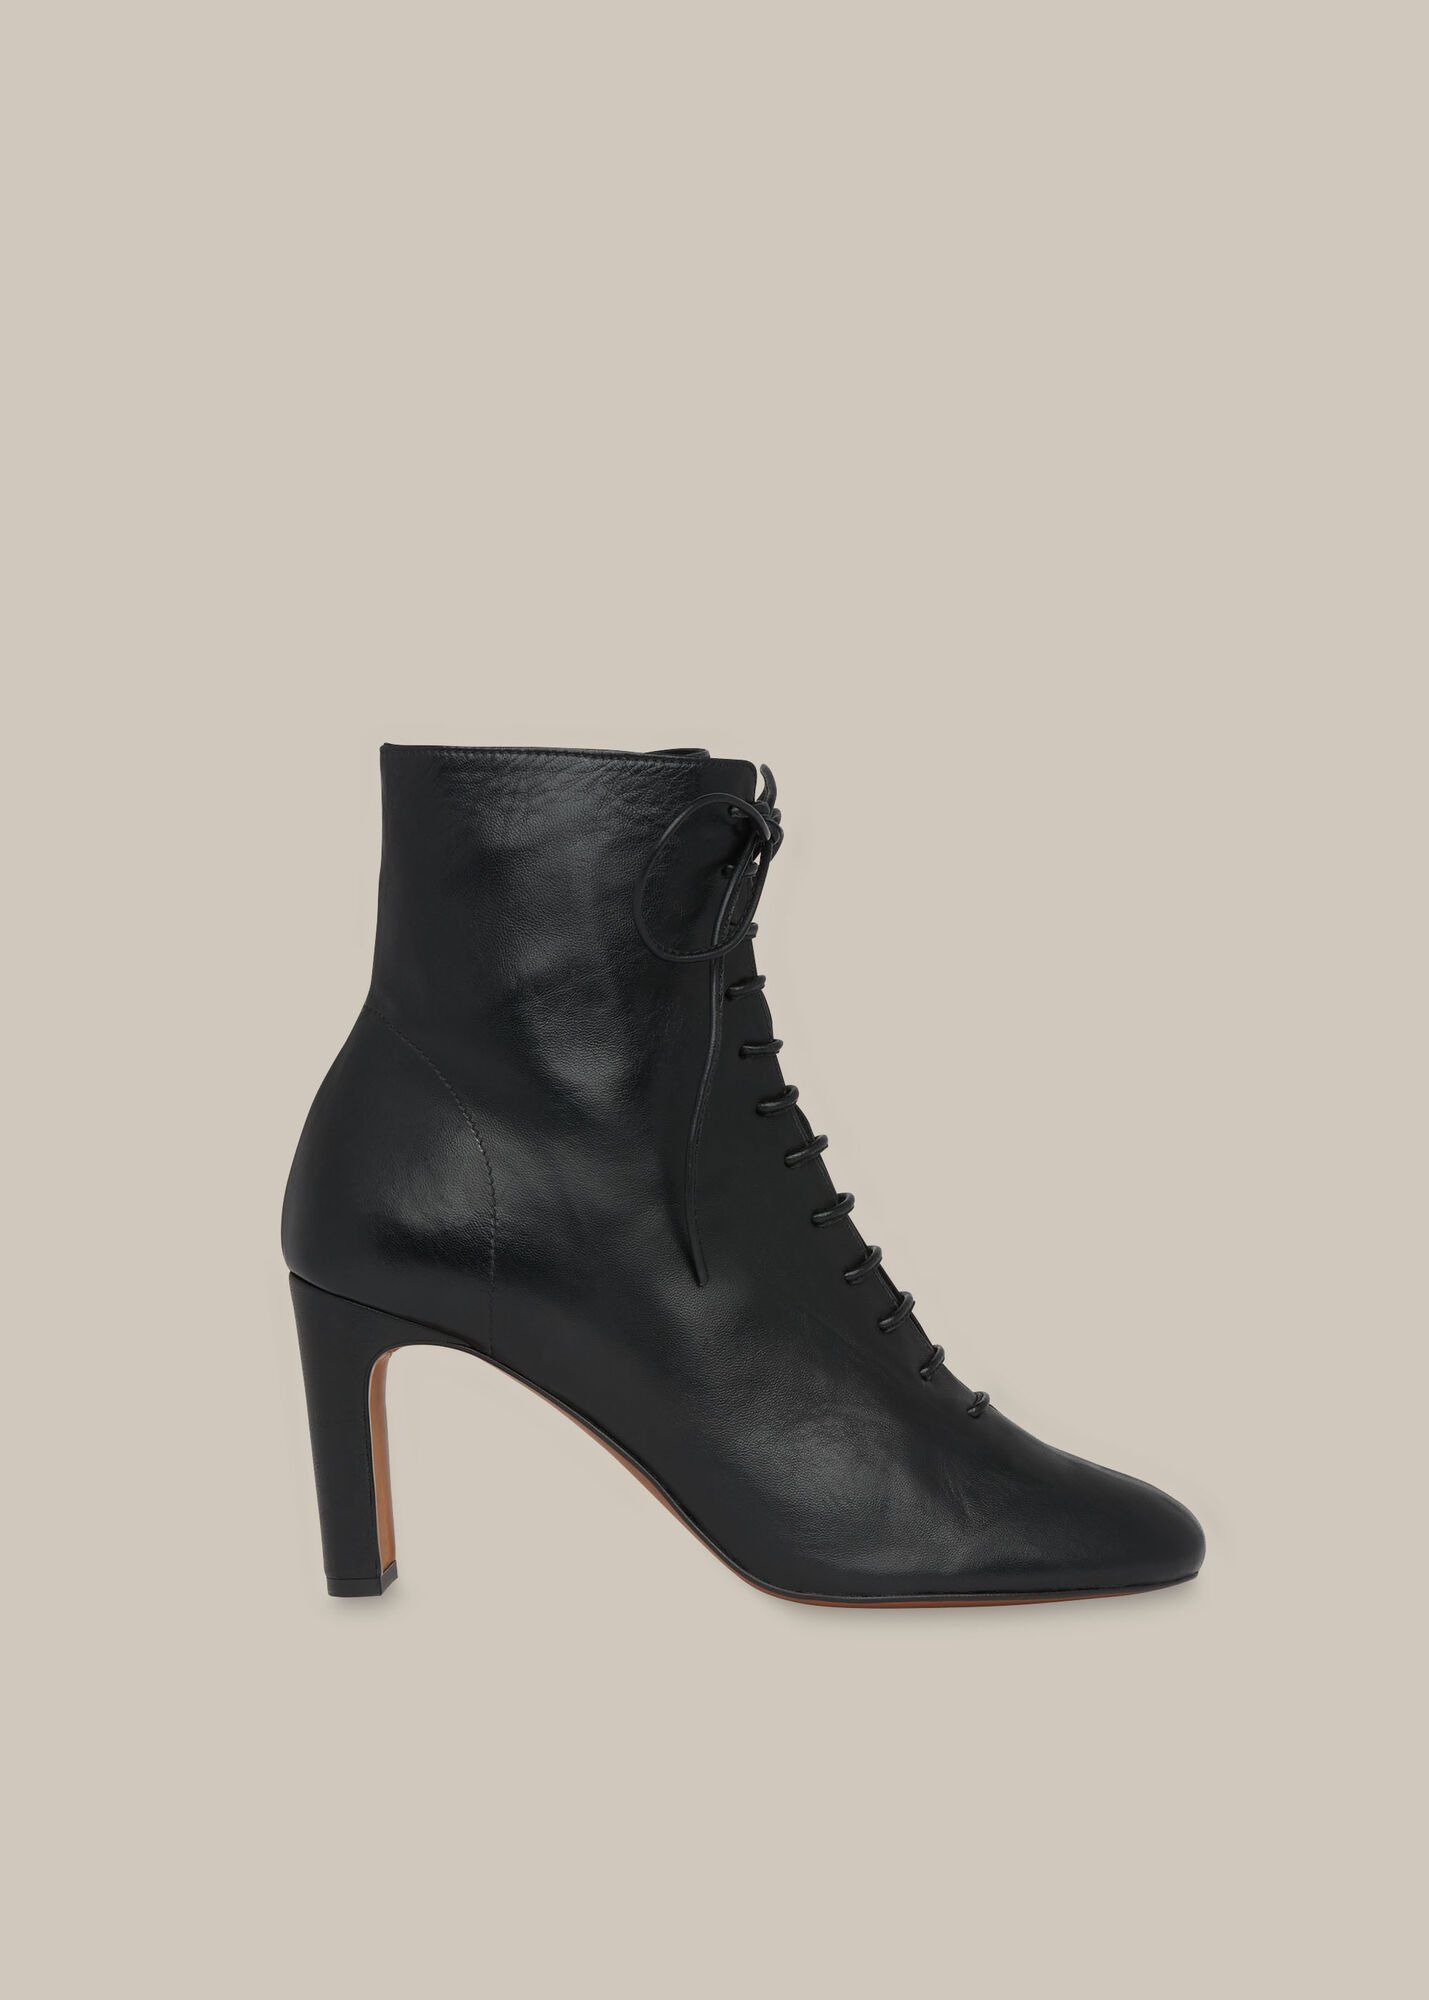 black heeled shoe boots uk